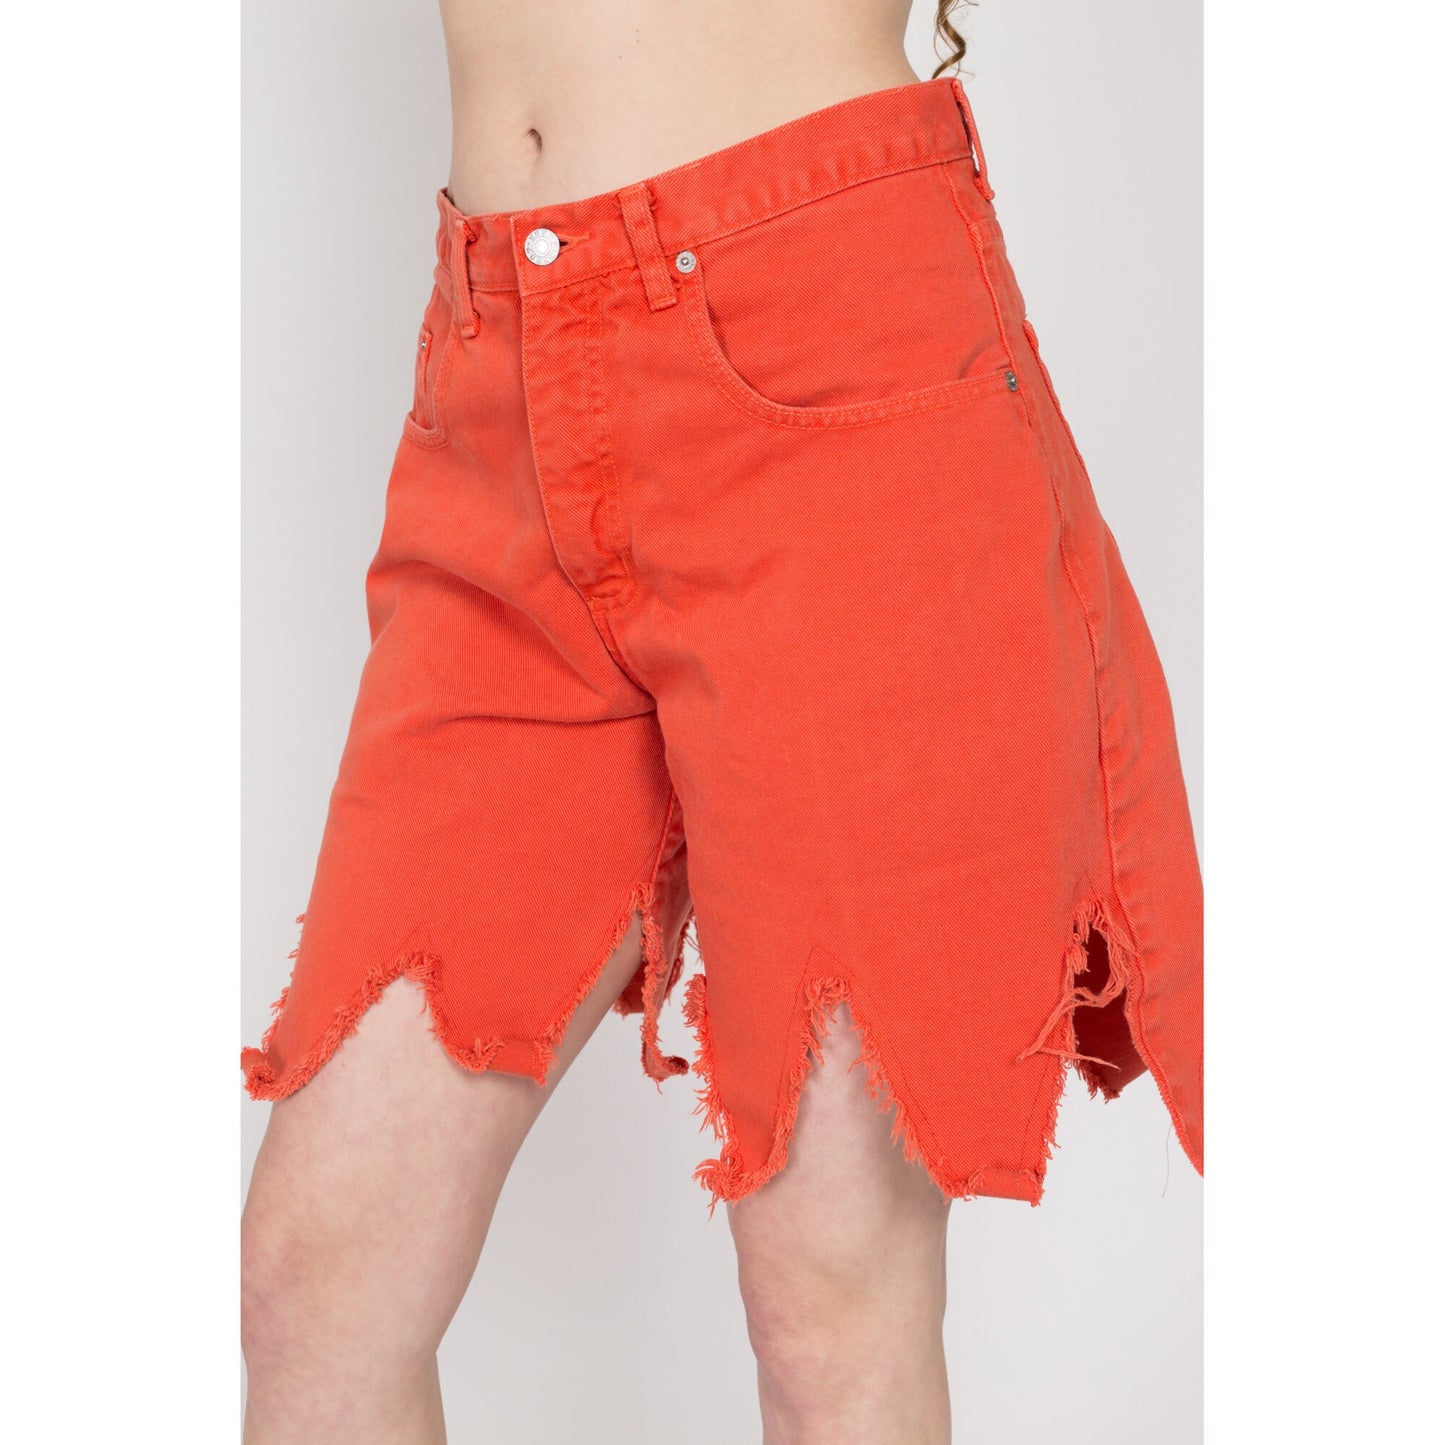 Medium 90s Guess Orange Dagger Hem Jean Shorts 30" | Vintage High Waisted Denim Cut Off Shorts